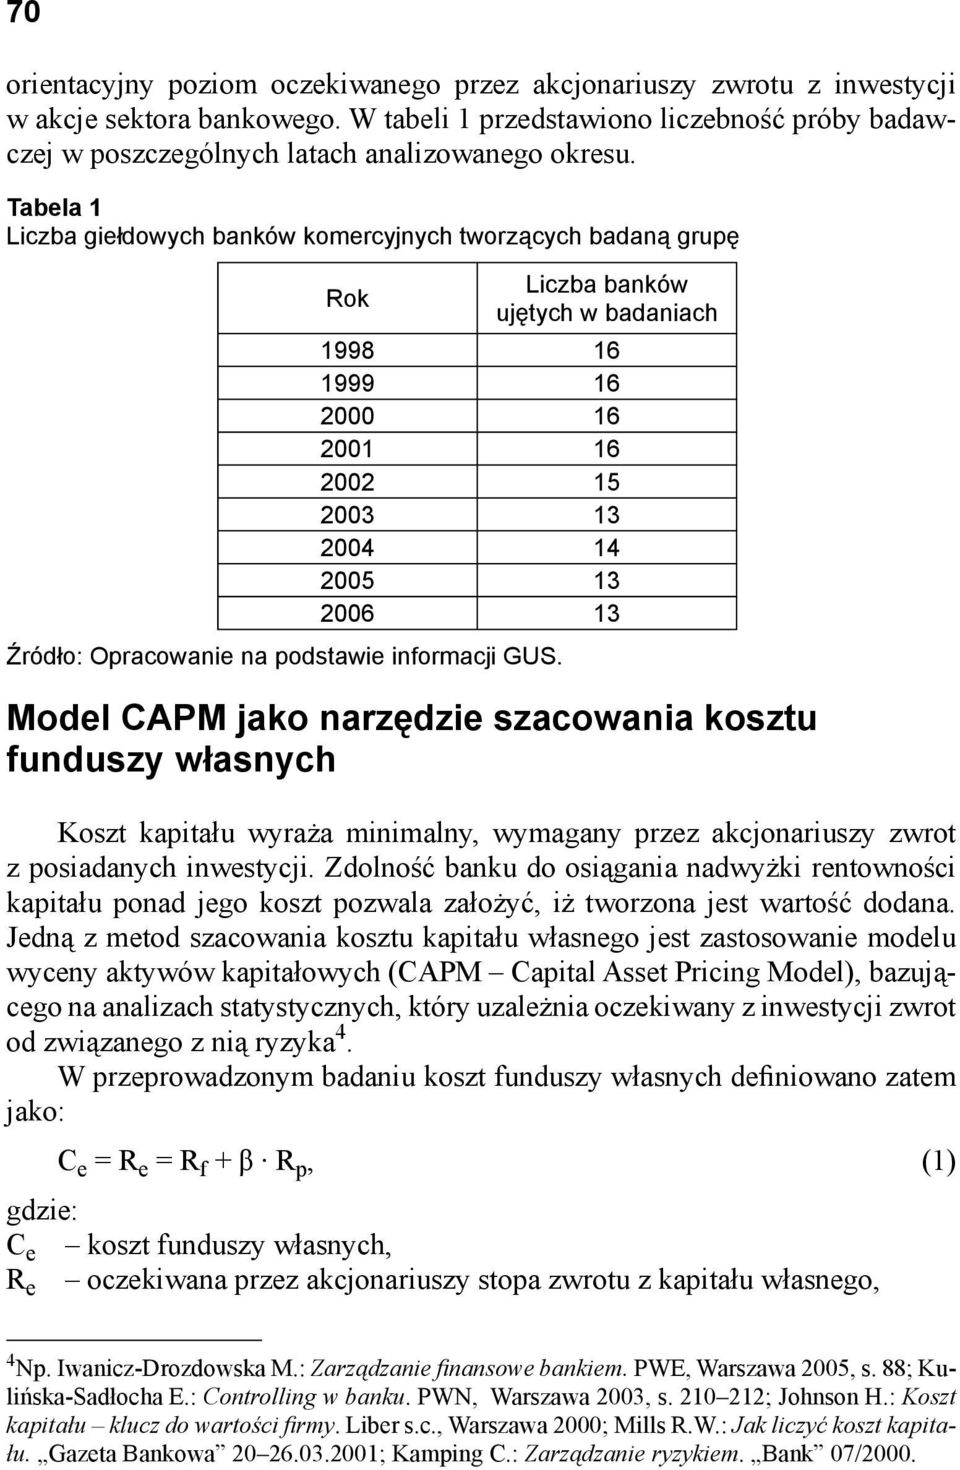 Opracowanie na podstawie informacji GUS. Model CAPM jako narzędzie szacowania kosztu funduszy własnych Koszt kapitału wyraża minimalny, wymagany przez akcjonariuszy zwrot z posiadanych inwestycji.